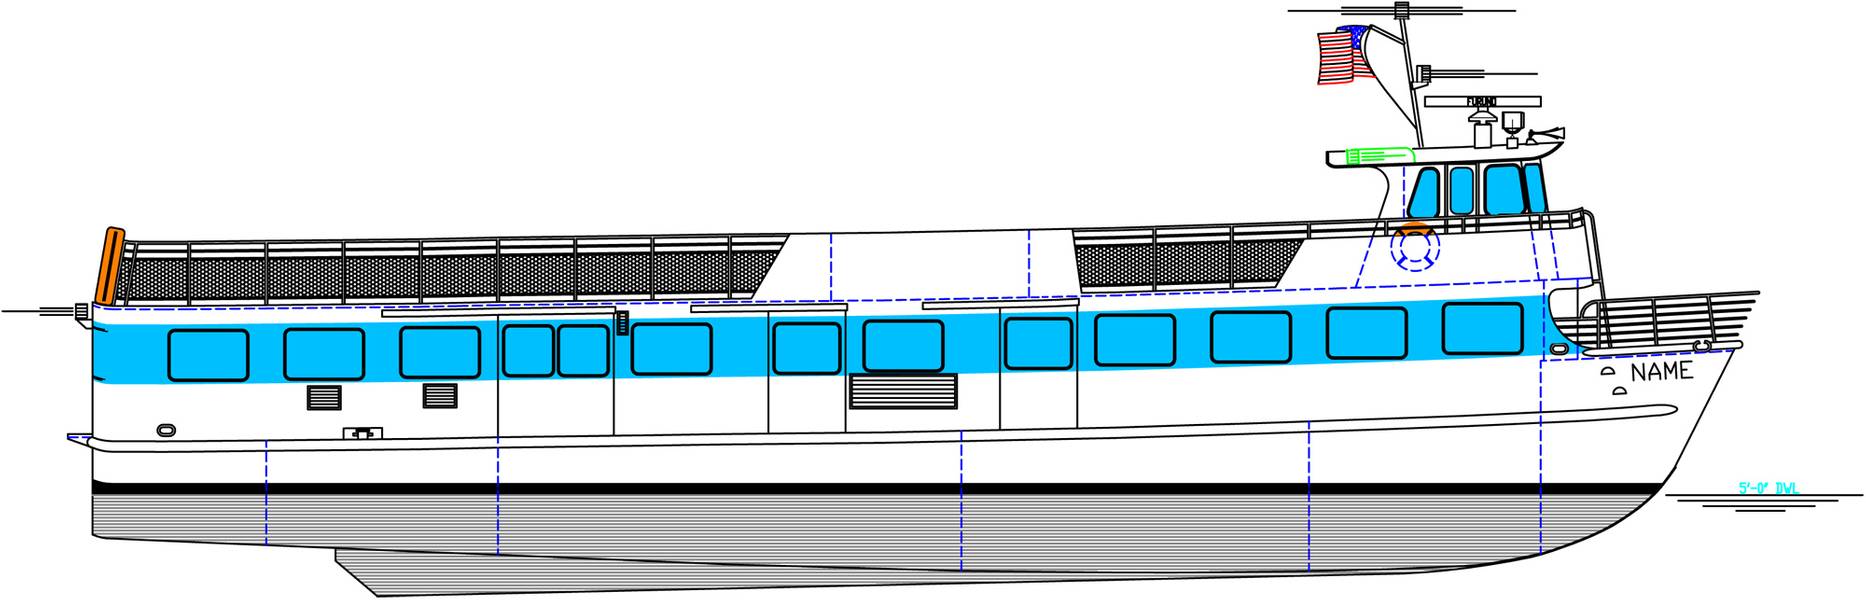 85英尺的布朗特轮渡将为火岛轮渡建造。 （Image：Blount Boats）